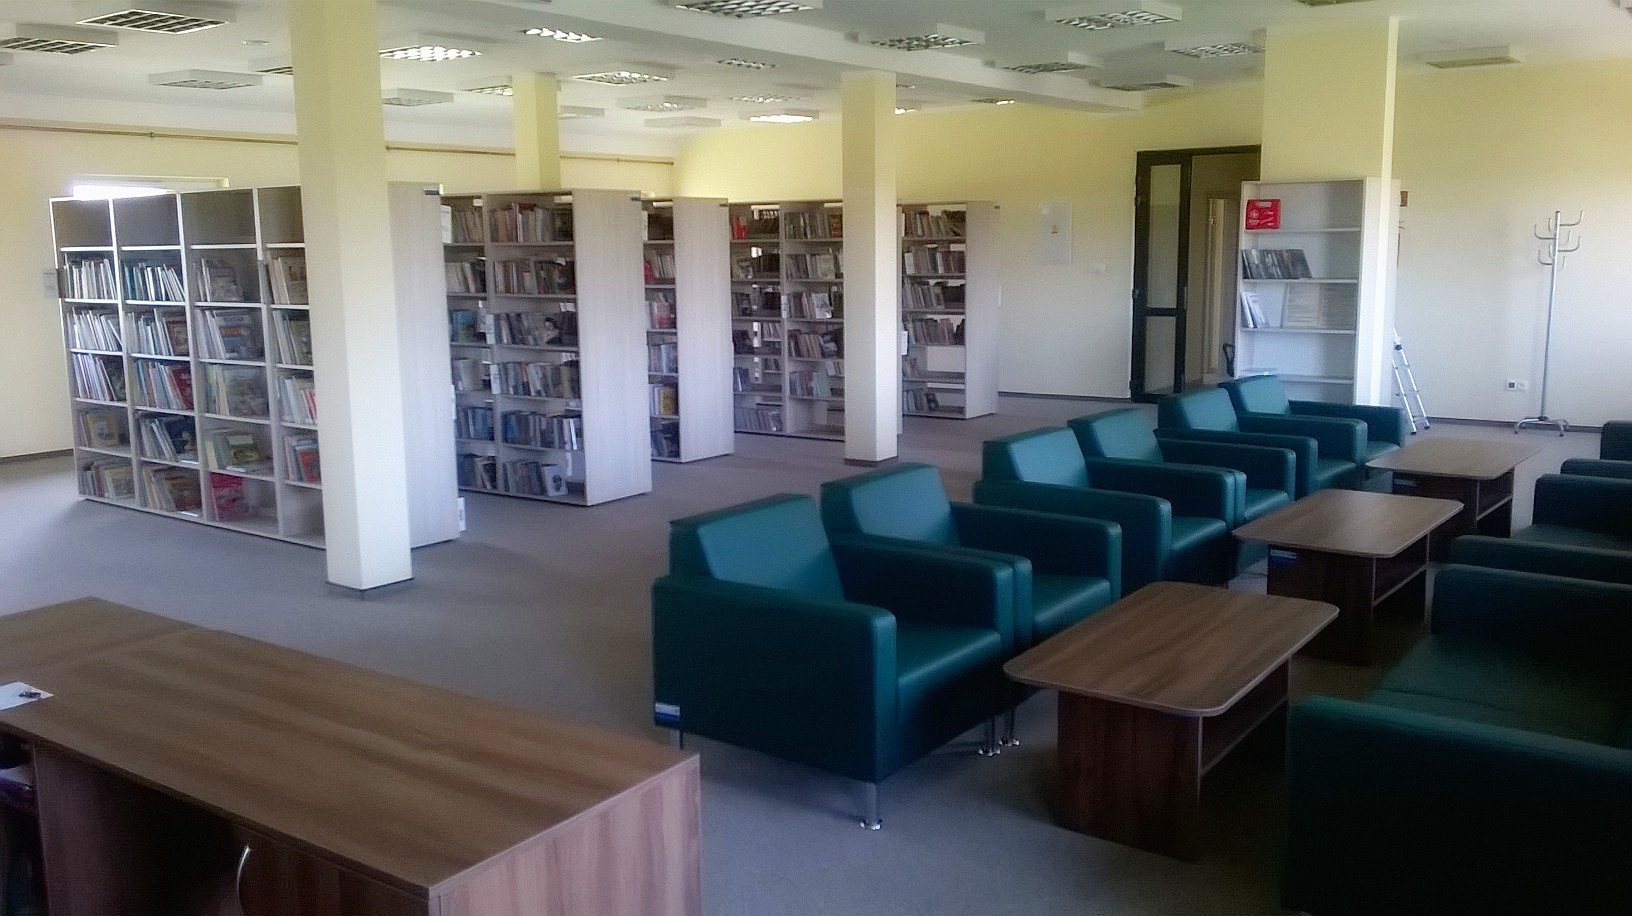 Filia biblioteczna w Oarowicach 1